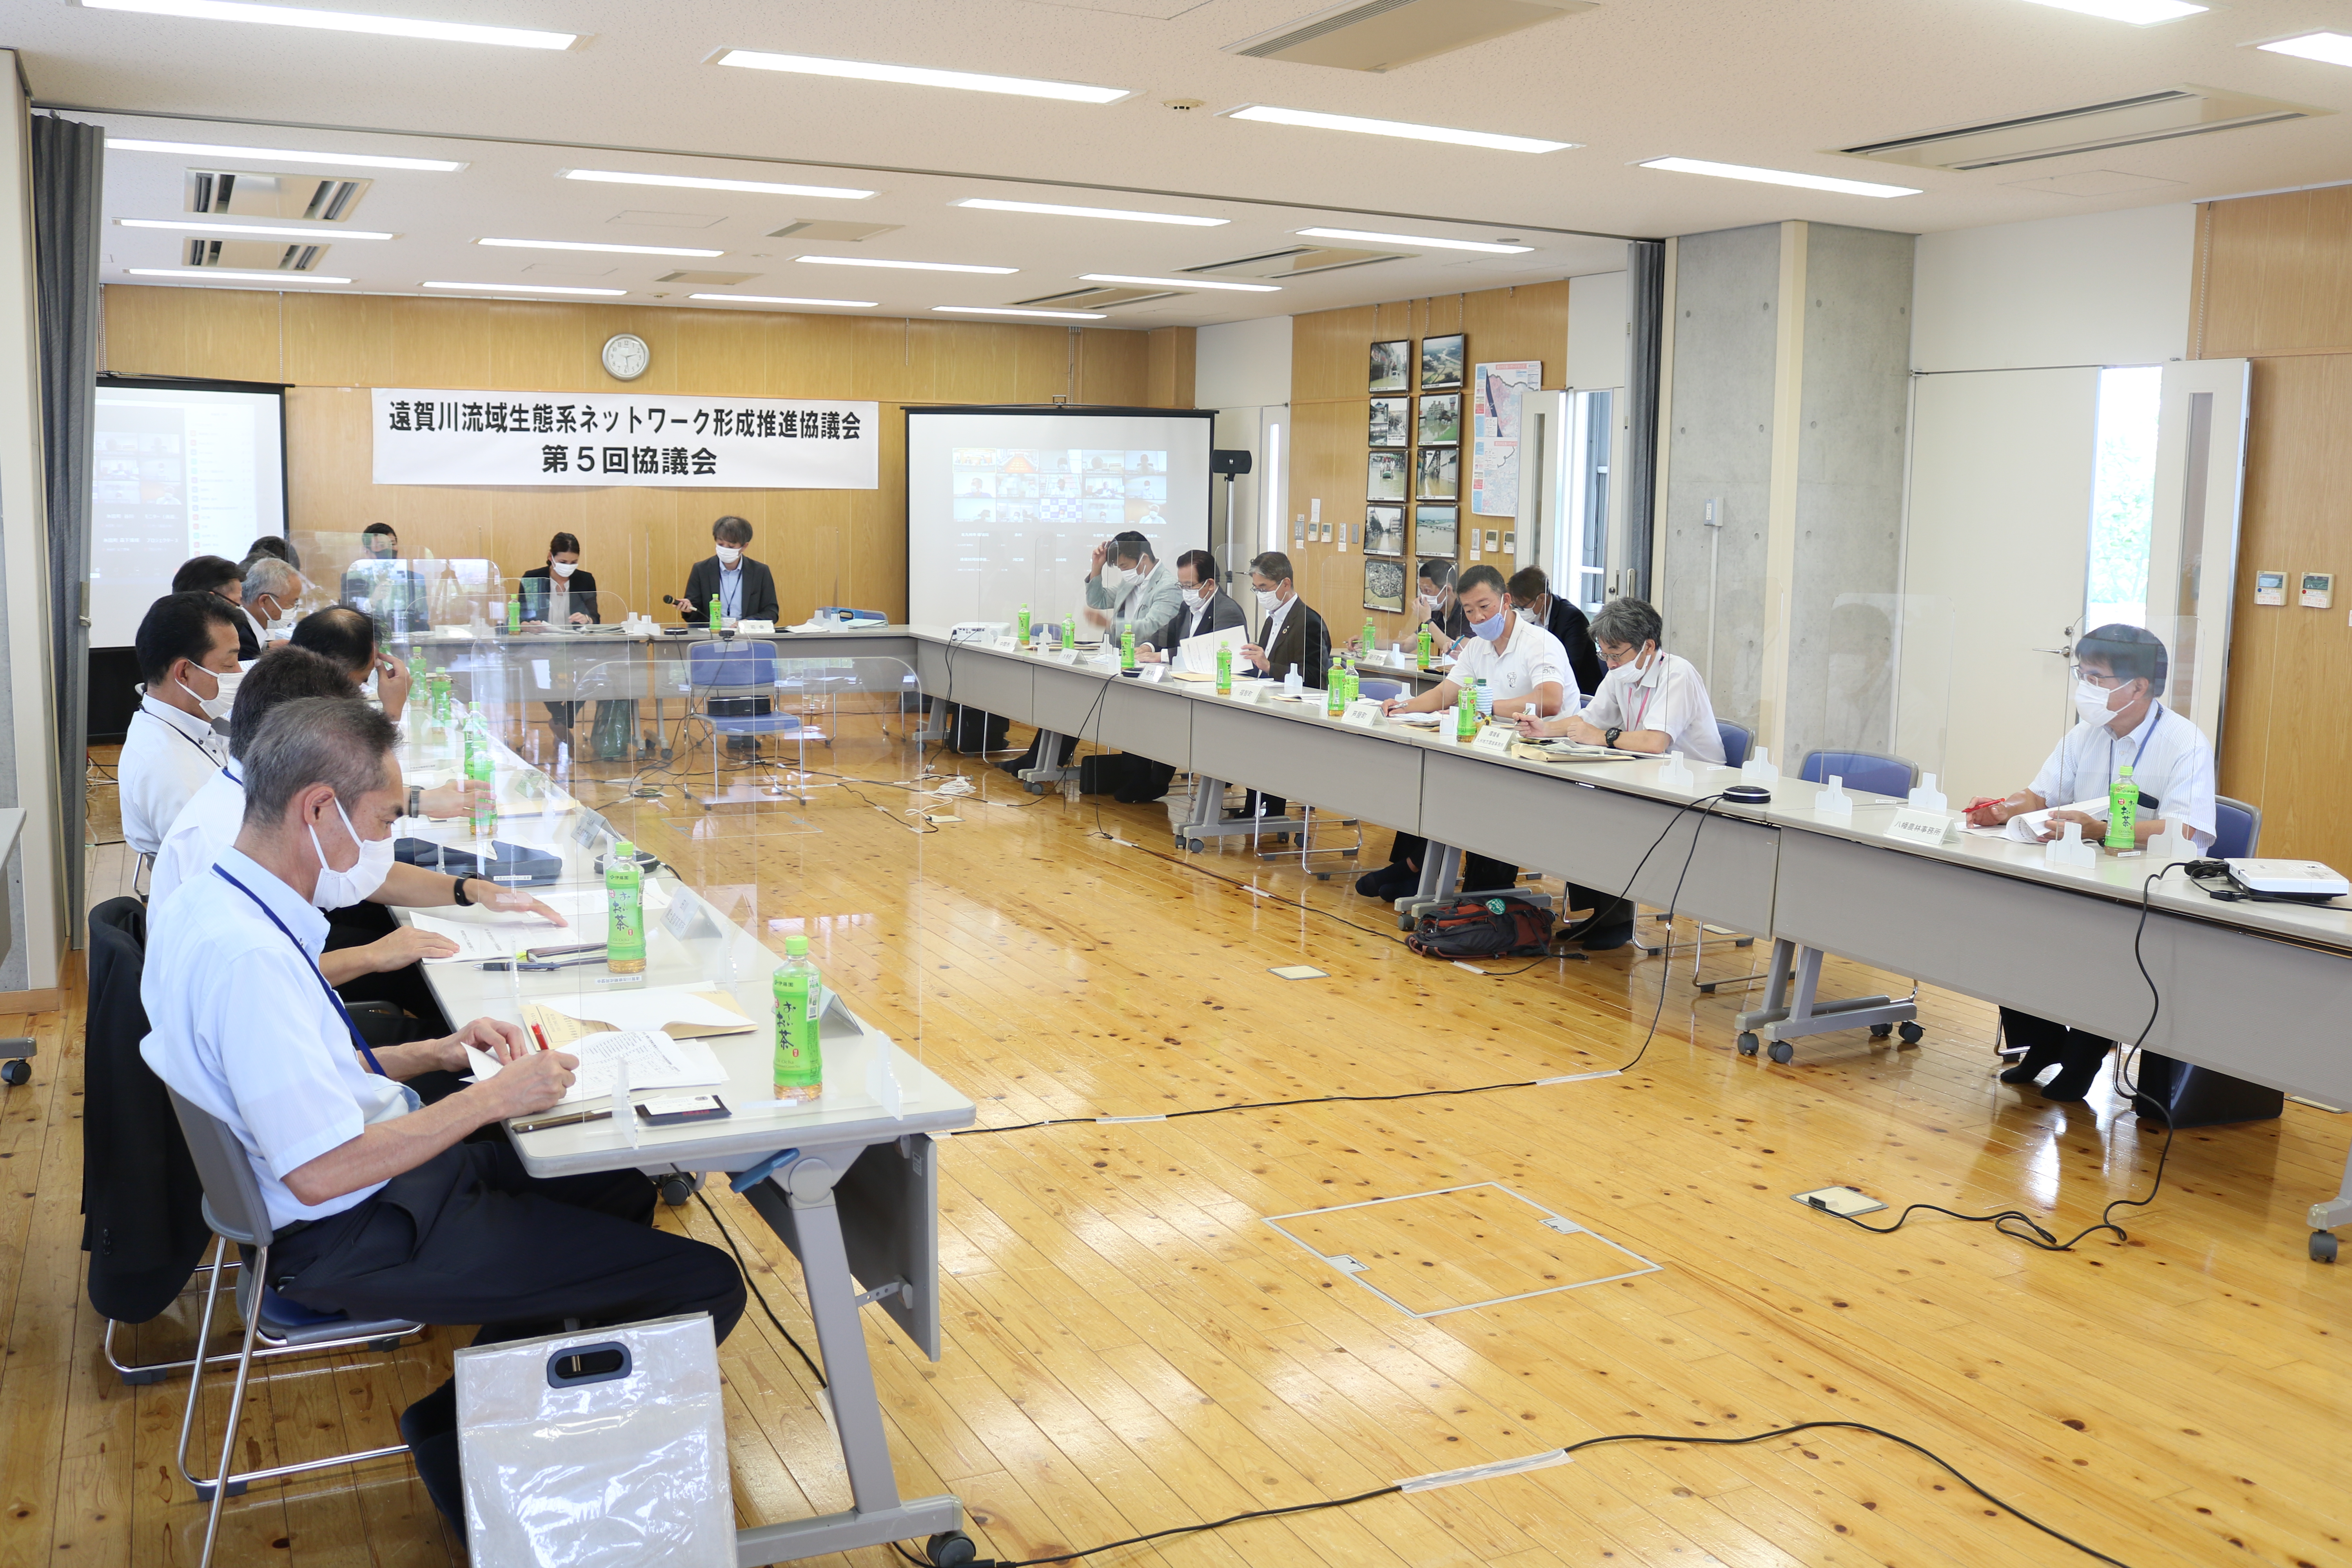 07.28_第4回遠賀川流域生態系ネットワーク形成推進協議会